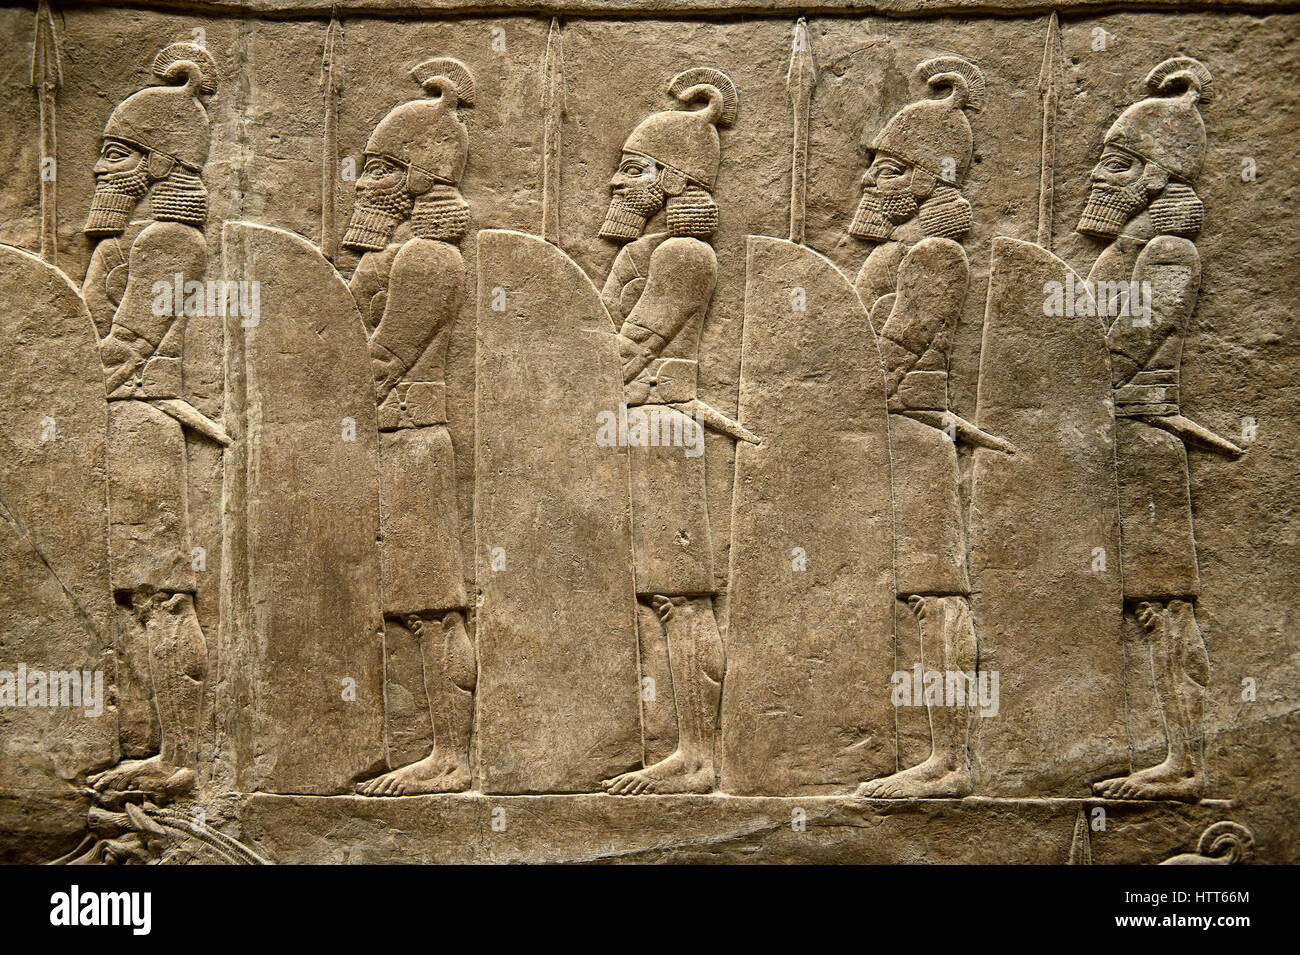 Assyrischen Relief Skulptur Panel Soldaten entlang der Straße von König Ashurnasirpal Löwen jagen.  Von Ninive Norden Palace, Irak, 668-627 v. Chr.  B Stockfoto